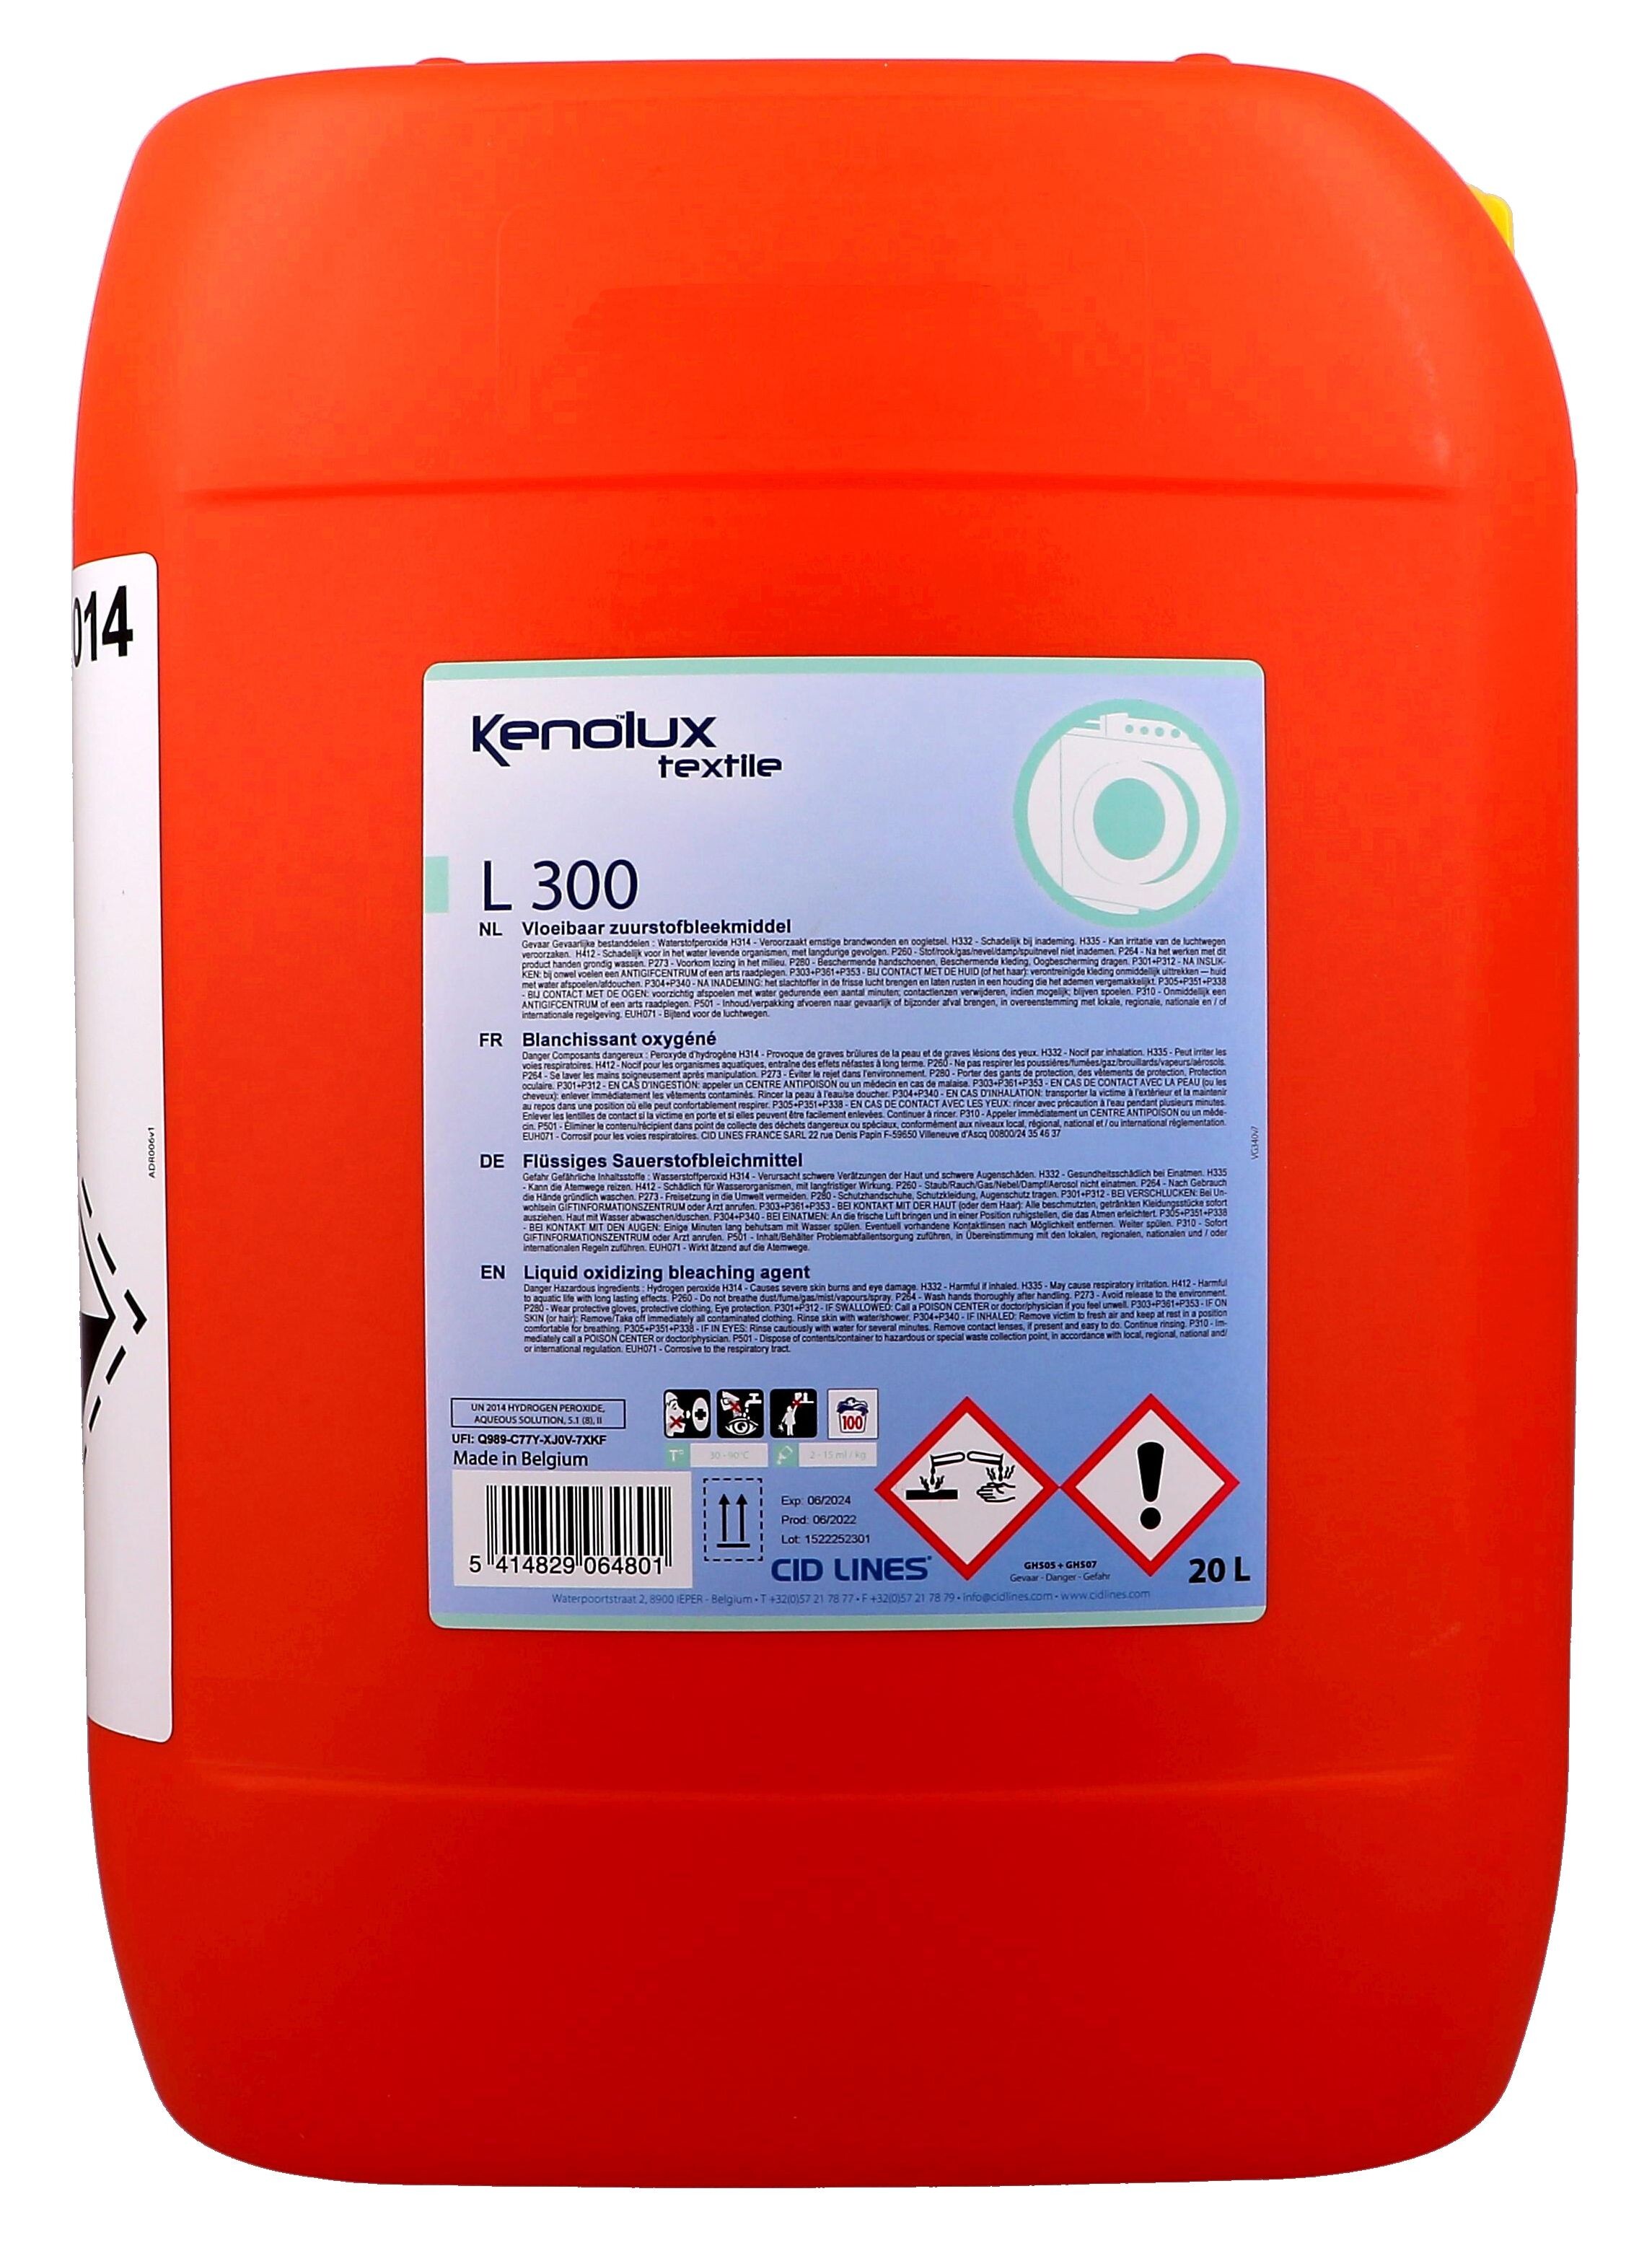 Kenolux Textile L200 Liquid Oxidizing Bleaching Agent 25kg